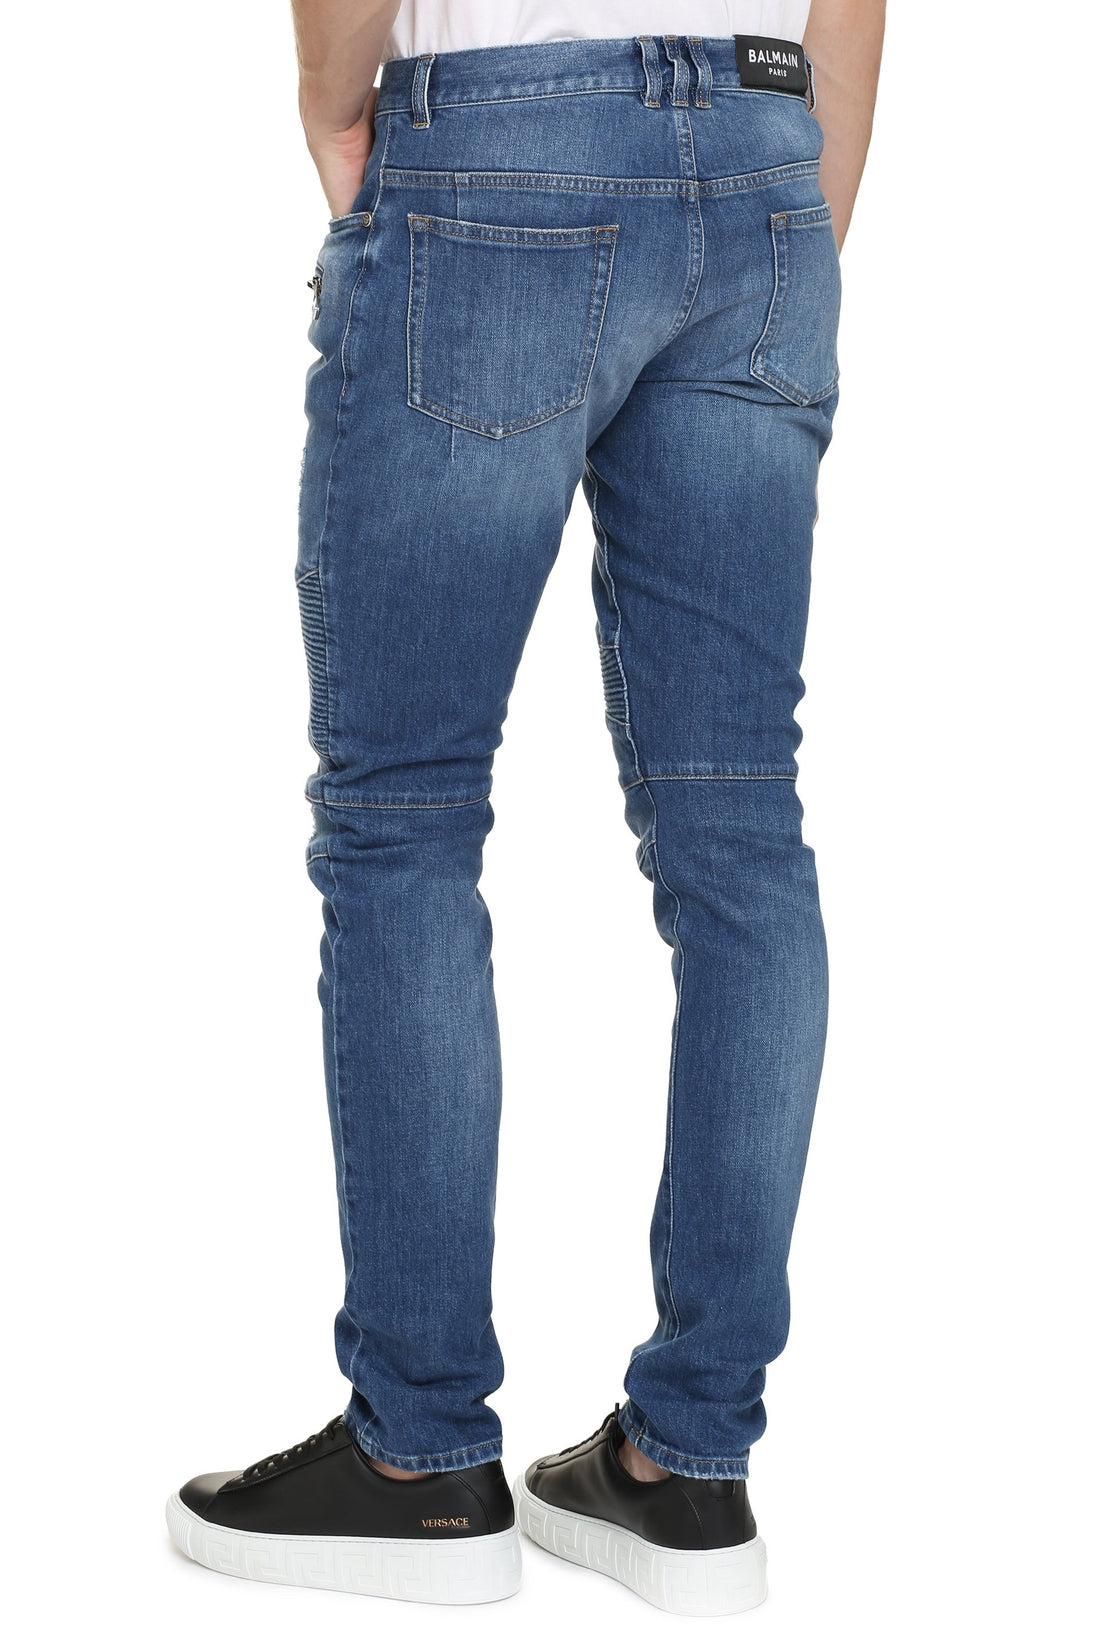 Balmain-OUTLET-SALE-Slim fit jeans-ARCHIVIST